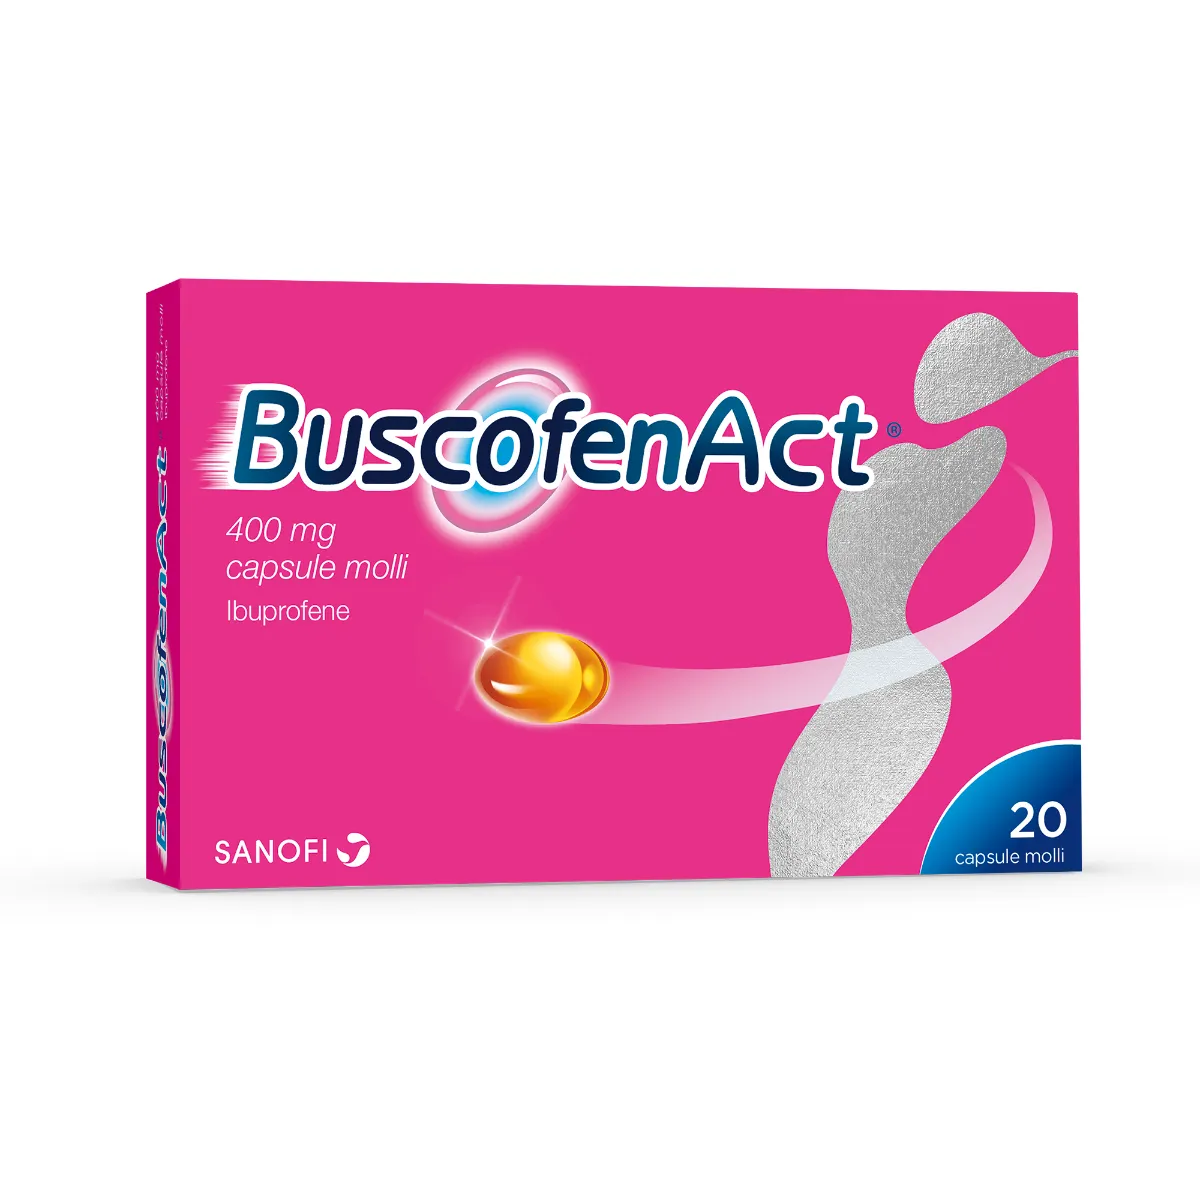 BuscofenAct 400 mg Ibuprofene 20 Capsule Molli Analgesico